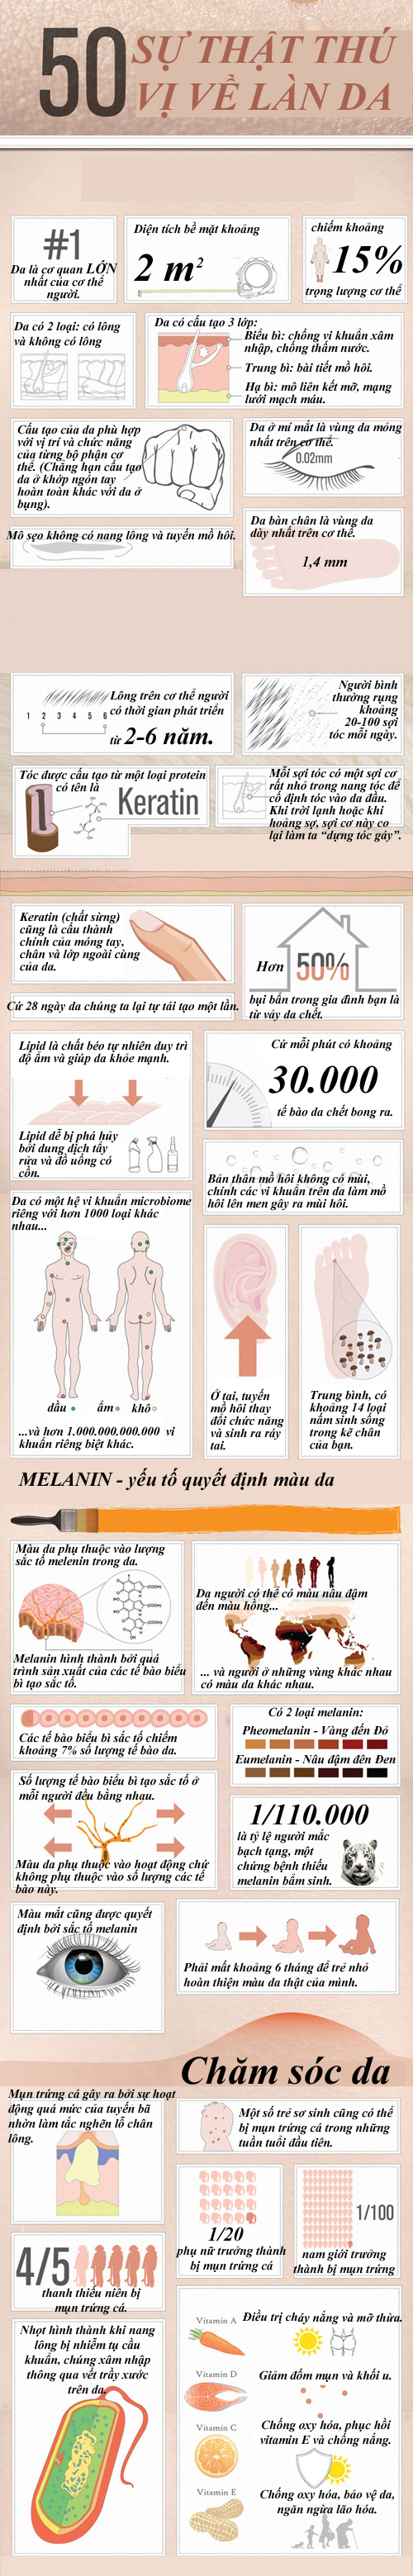 Bạn có biết - 50 sự thật thú vị về làn da